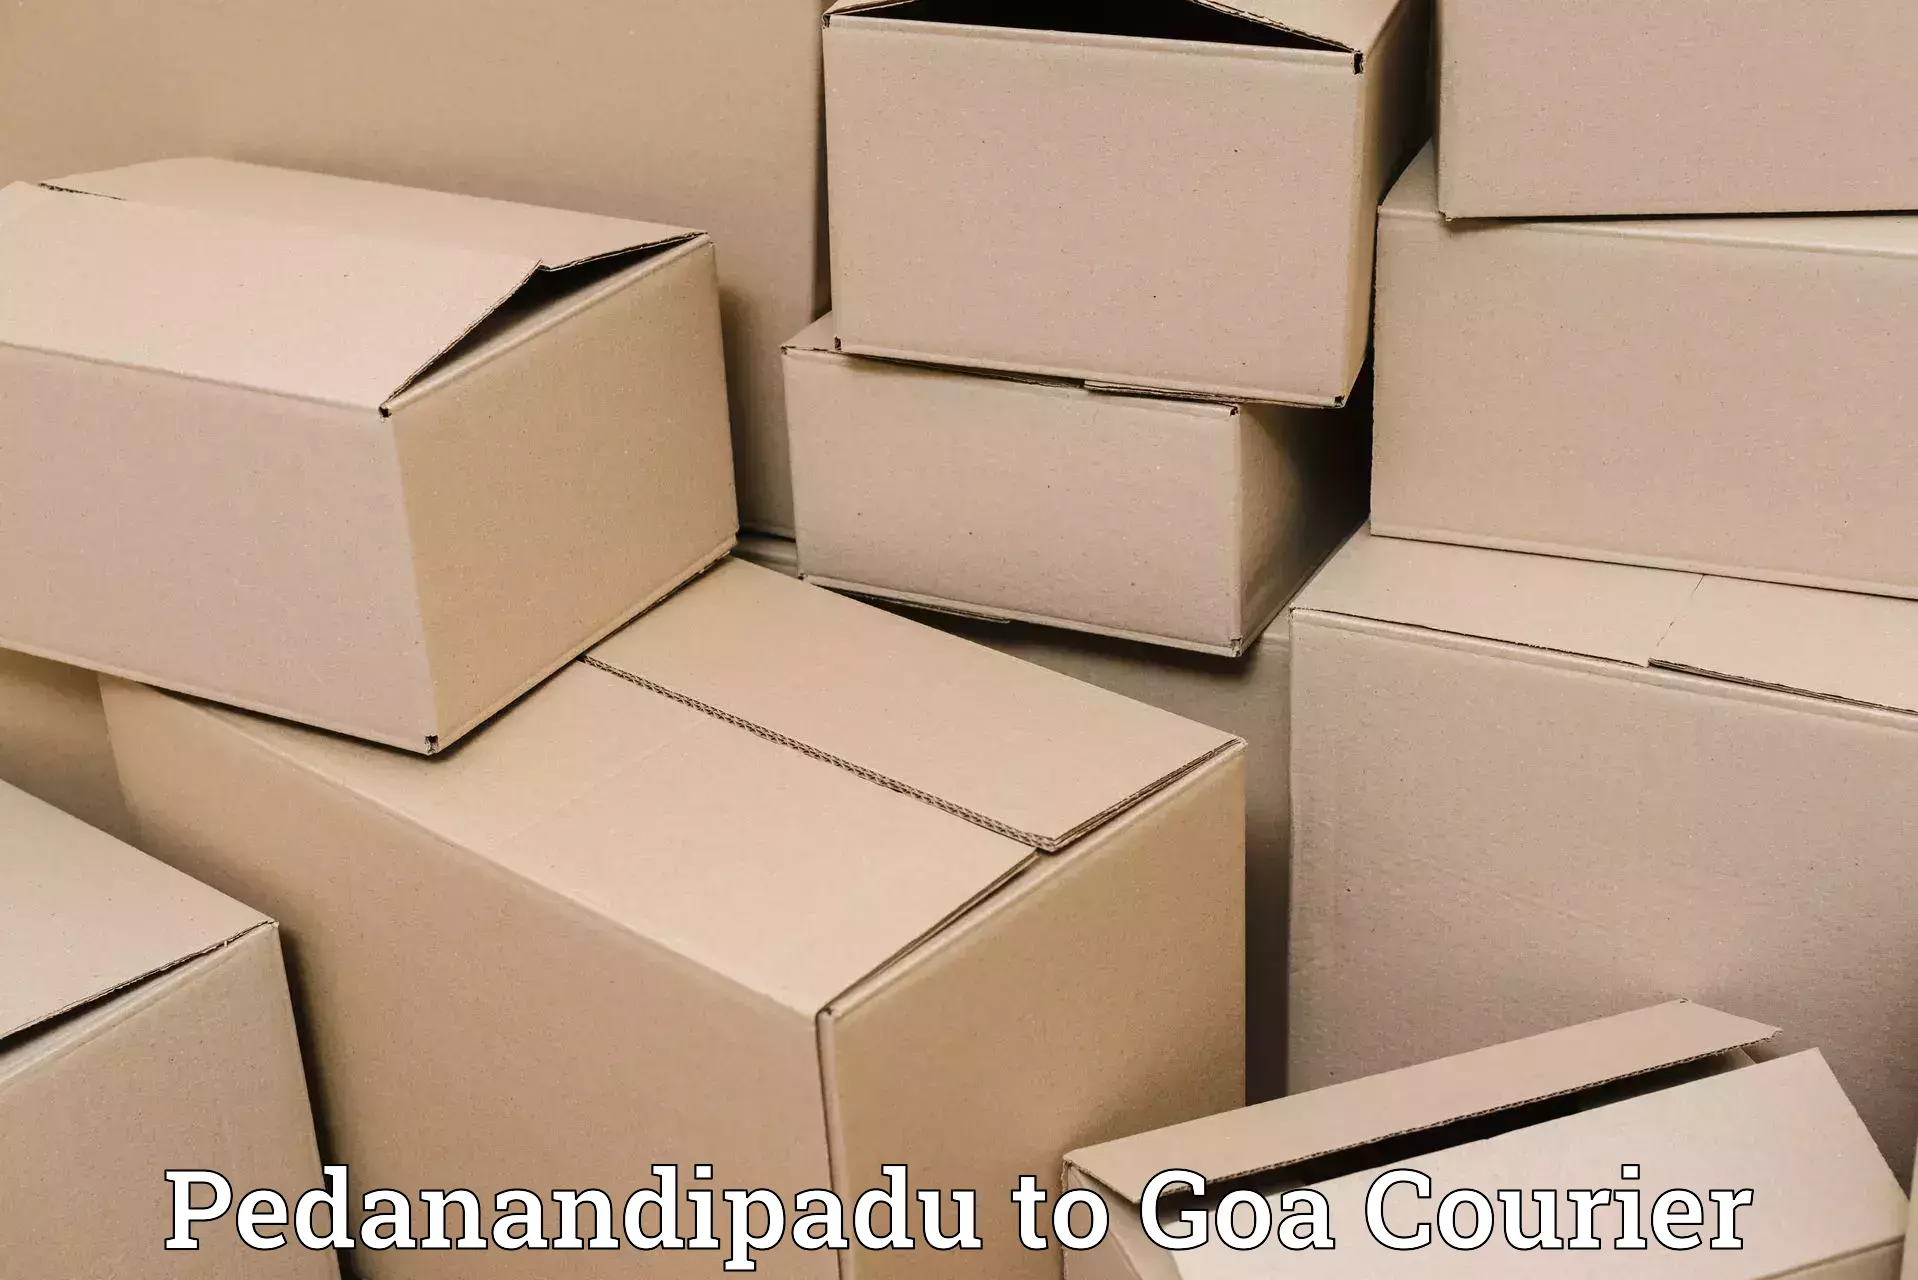 Efficient order fulfillment Pedanandipadu to Goa